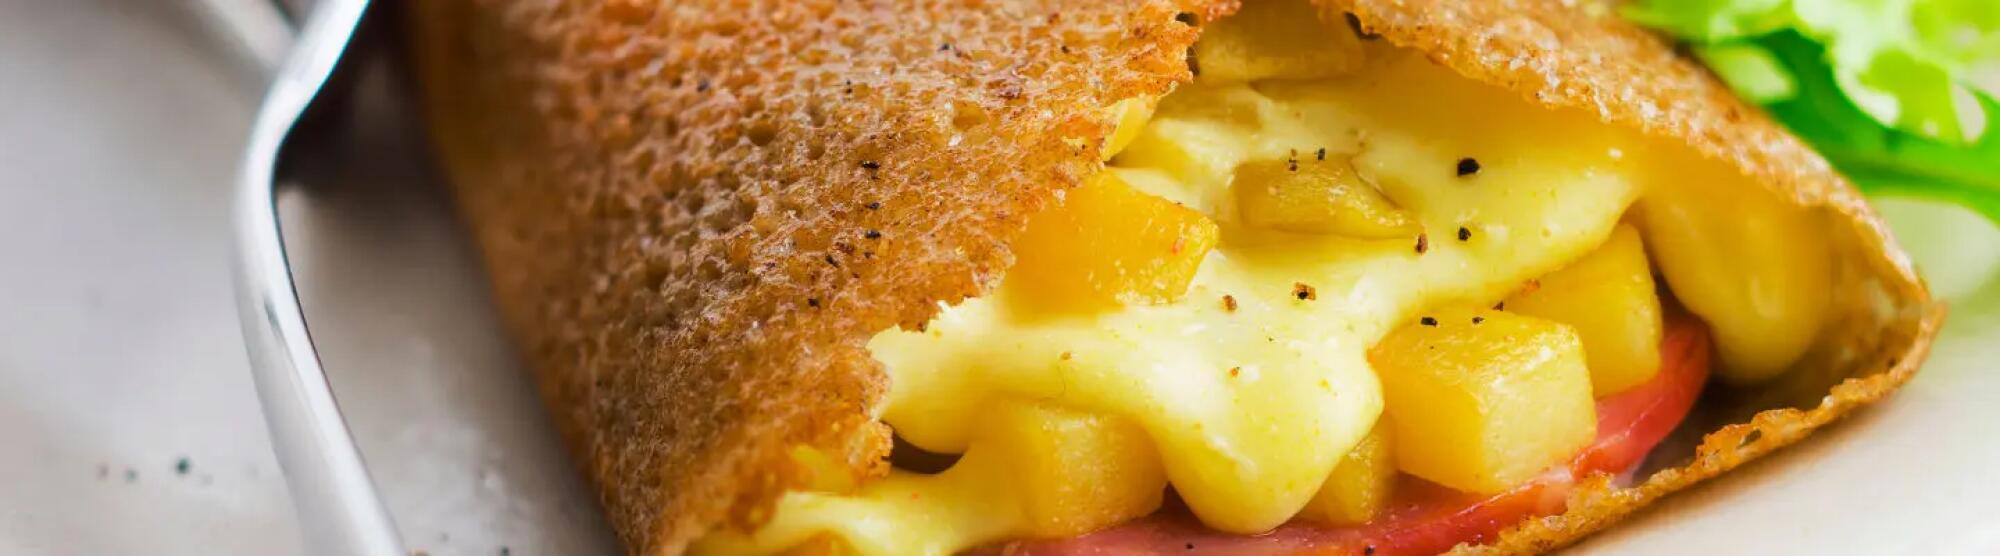 Recette : Galettes au fromage à raclette